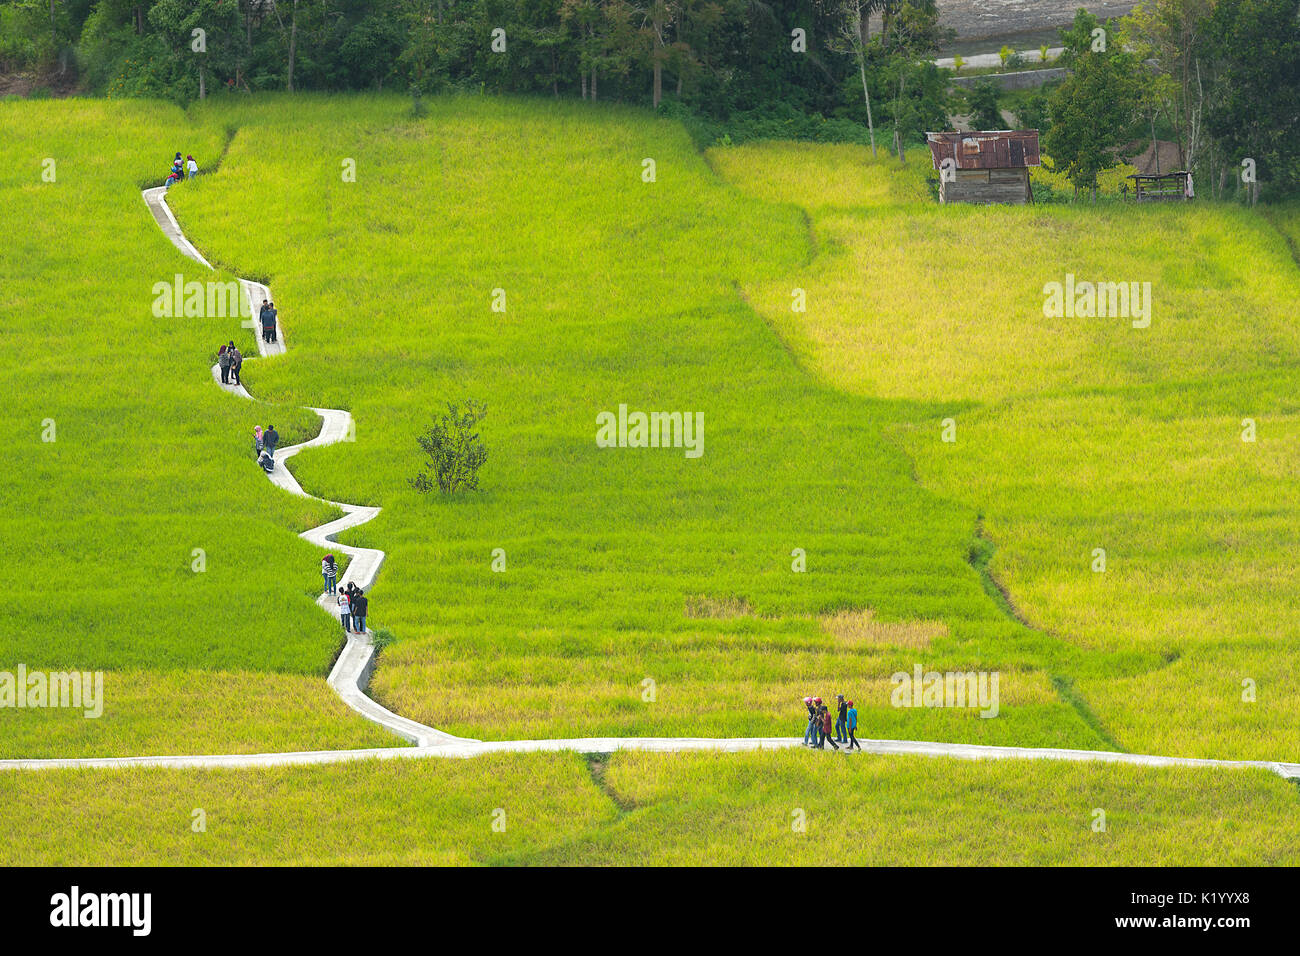 Einen wackligen konkrete Weg durch Einrahmer grüne Reisfelder für Besucher und Touristen, Tengah Sawah Ngarai Sianok, Bukit Tinggi, Sumarta, Indonesien. Stockfoto